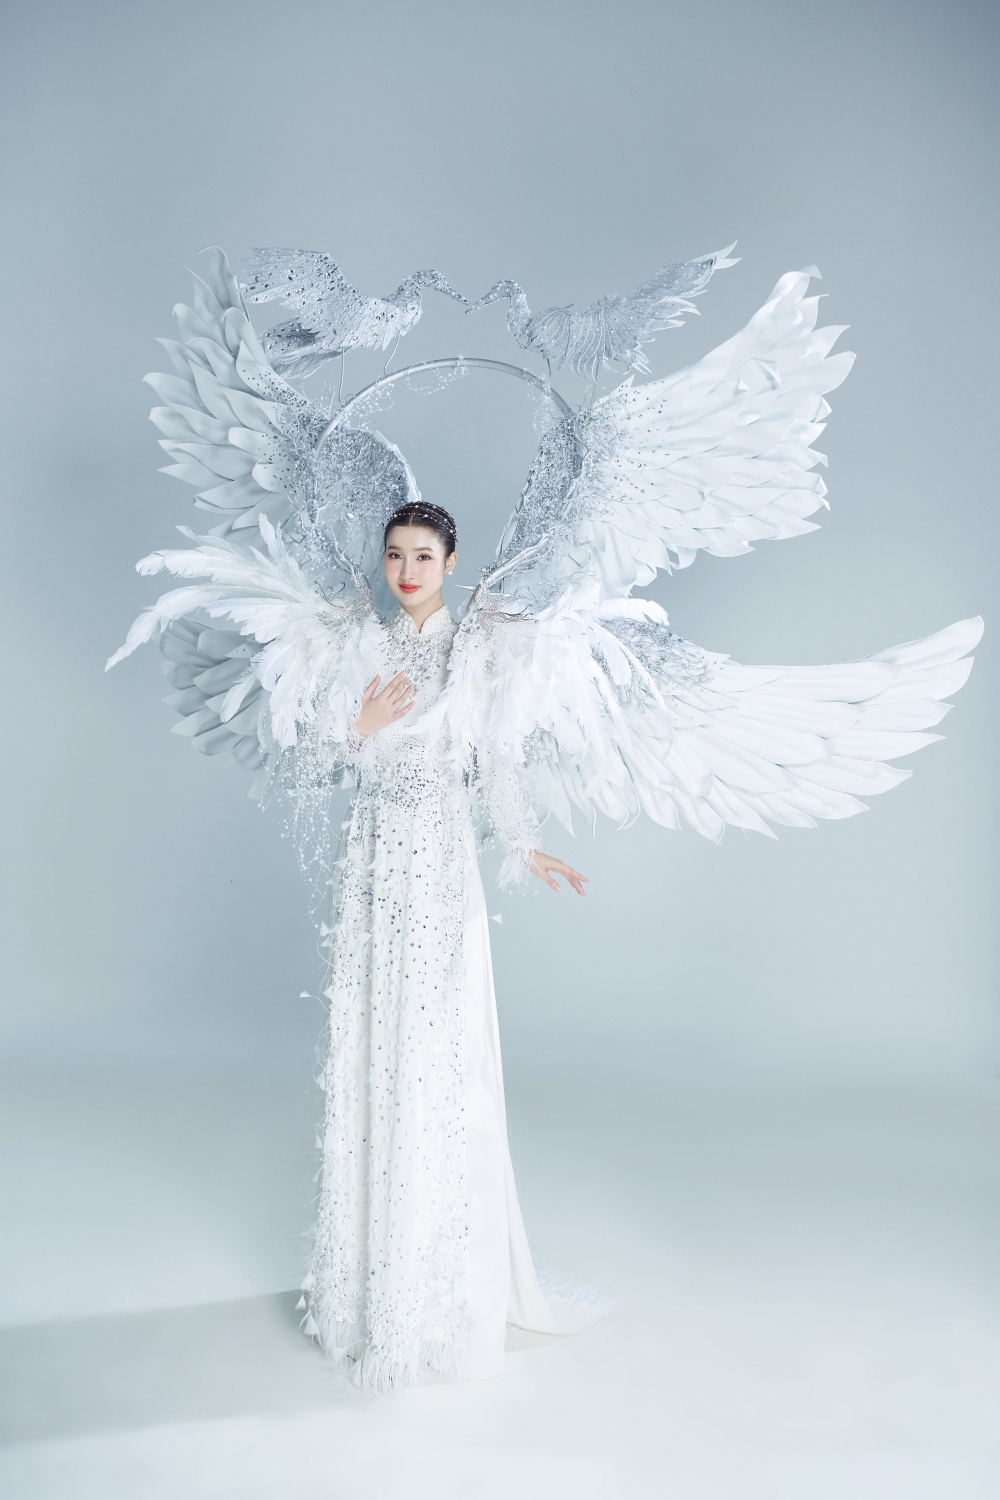 Phương Nhi đem trang phục “Cò ơi” nặng hơn 10kg đến Miss International 2023 - Ảnh 2.